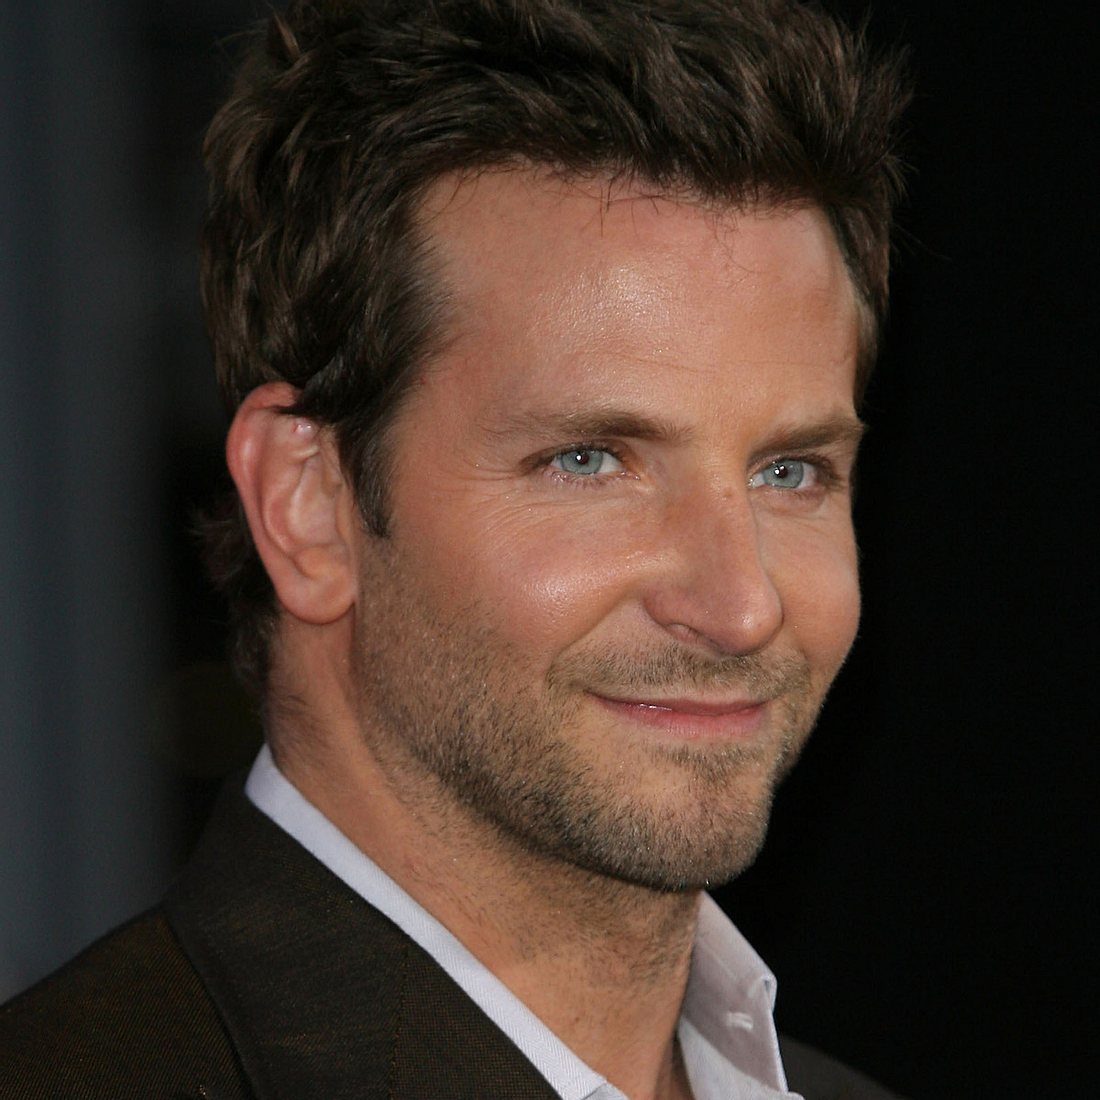 Bradley Cooper: Teuflische Rolle